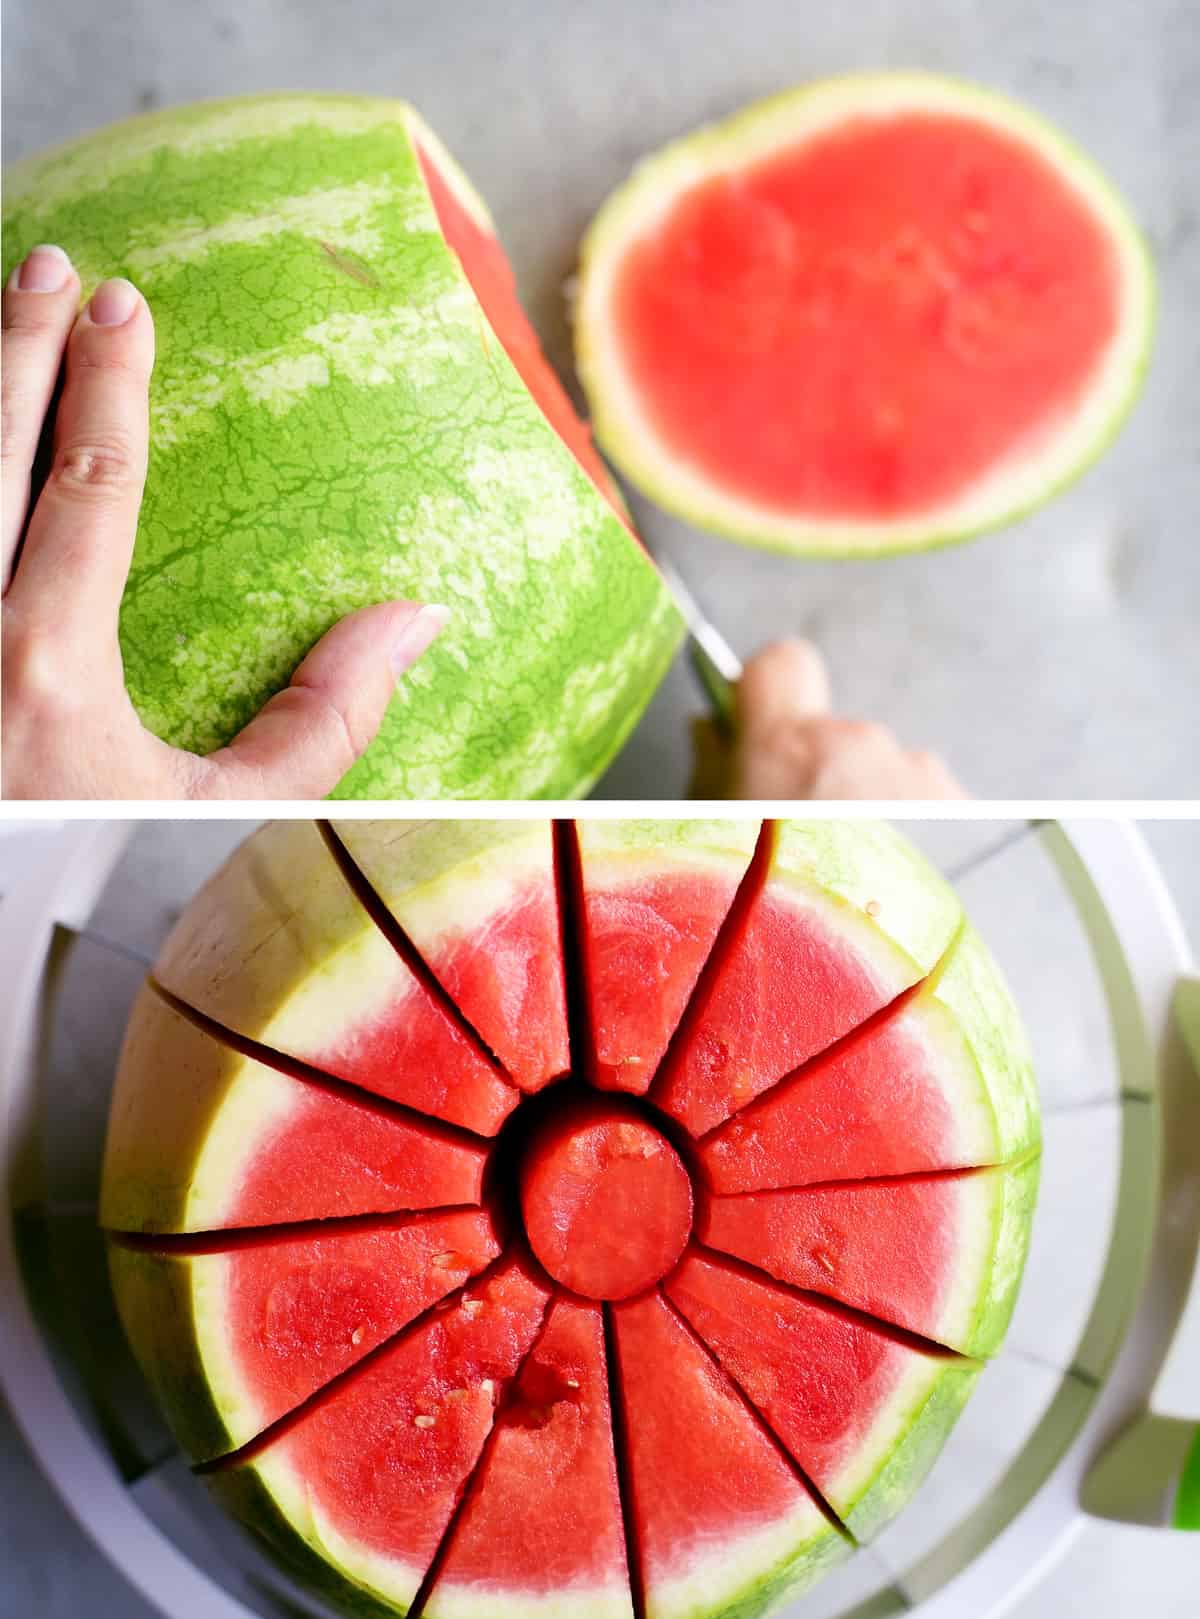 MSEKKO Watermelon Slicer Multifunction Crescent Shape Cut Fruit Melon Watermelon Slicer Shapes Useful 